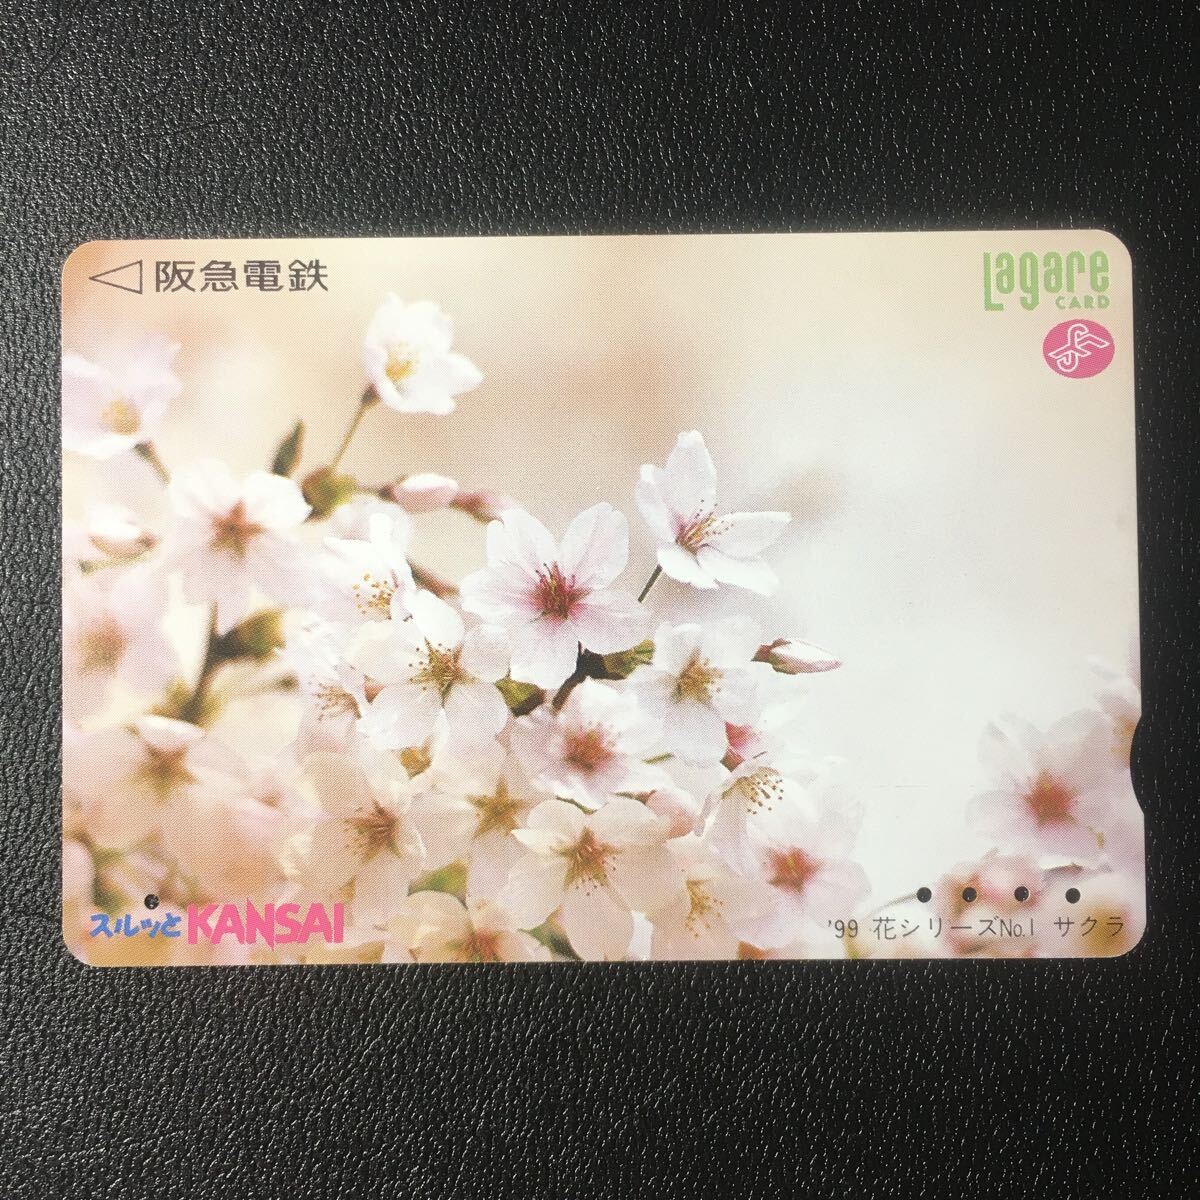 1999年3月1日発売柄ー花シリーズ「サクラ」ー阪急ラガールカード(使用済スルッとKANSAI)_画像1